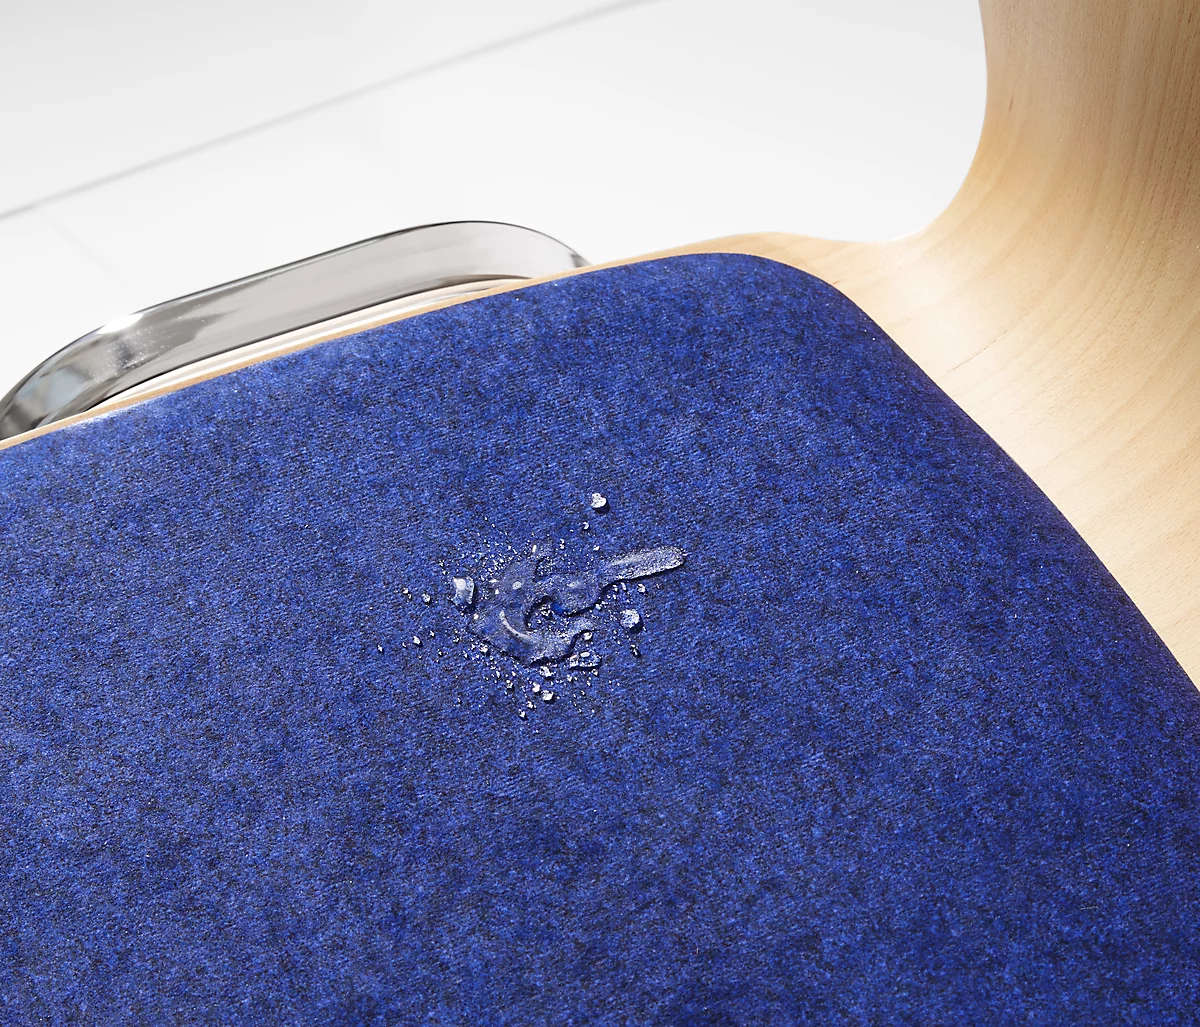 Silla apilable 7450, asiento moldeado, apoyo lumbar, perforaciones de diseño, sin reposabrazos, tapizado Kashmara, azul